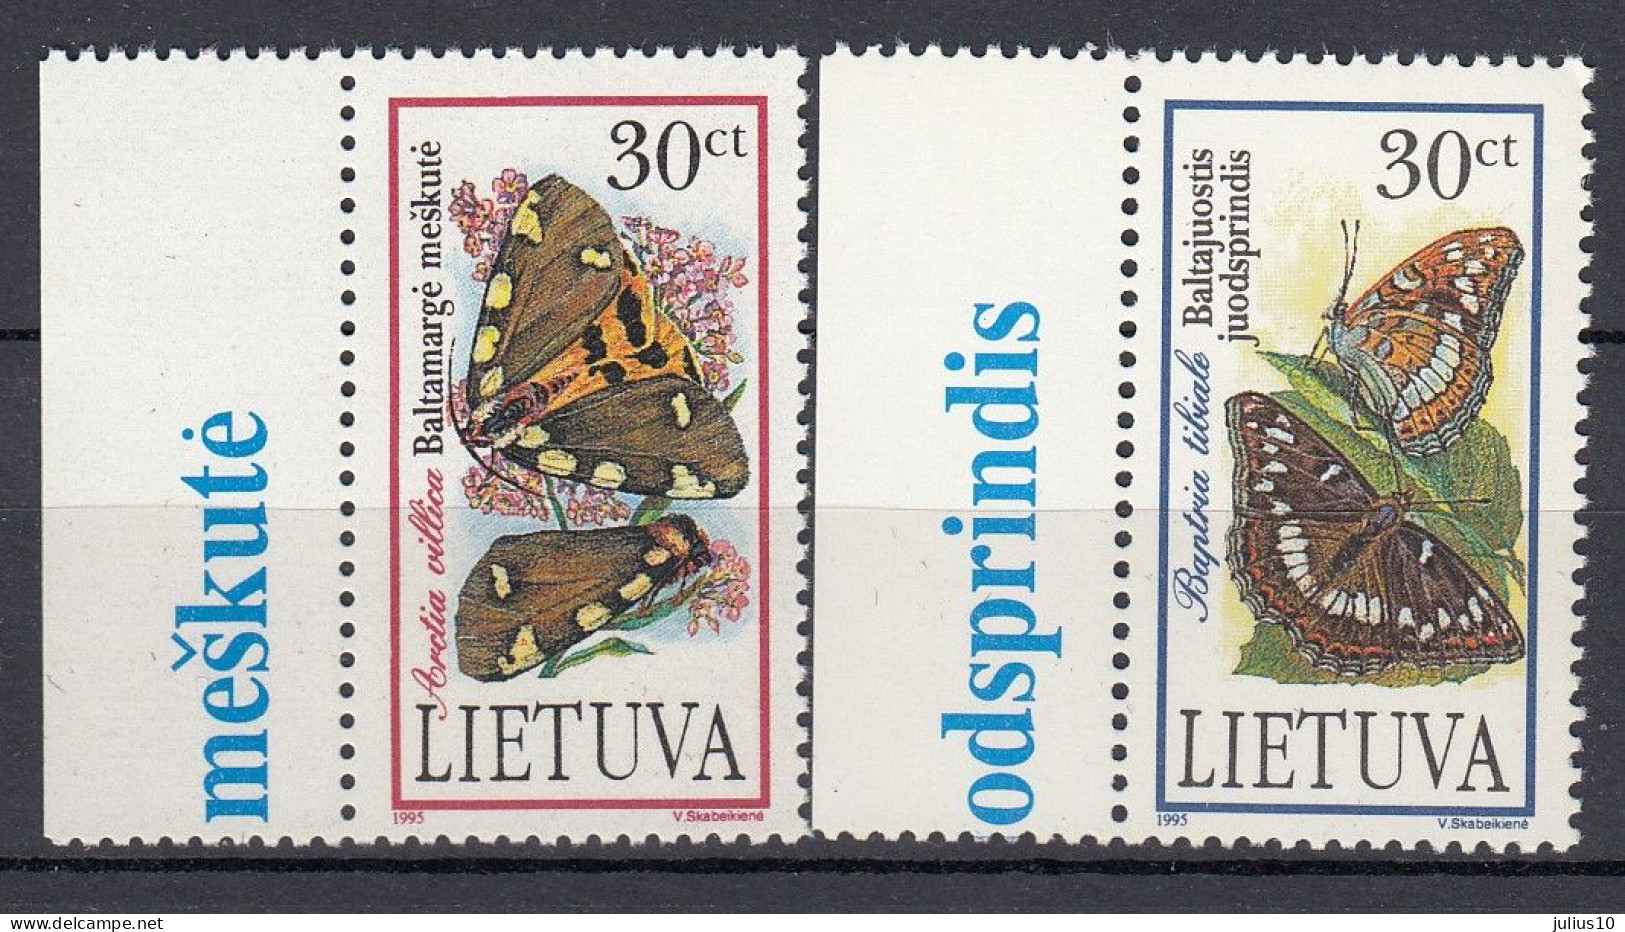 LITHUANIA 1995 Fauna Insects Butterflies MNH(**) Mi 589-590 #Lt1136 - Litauen